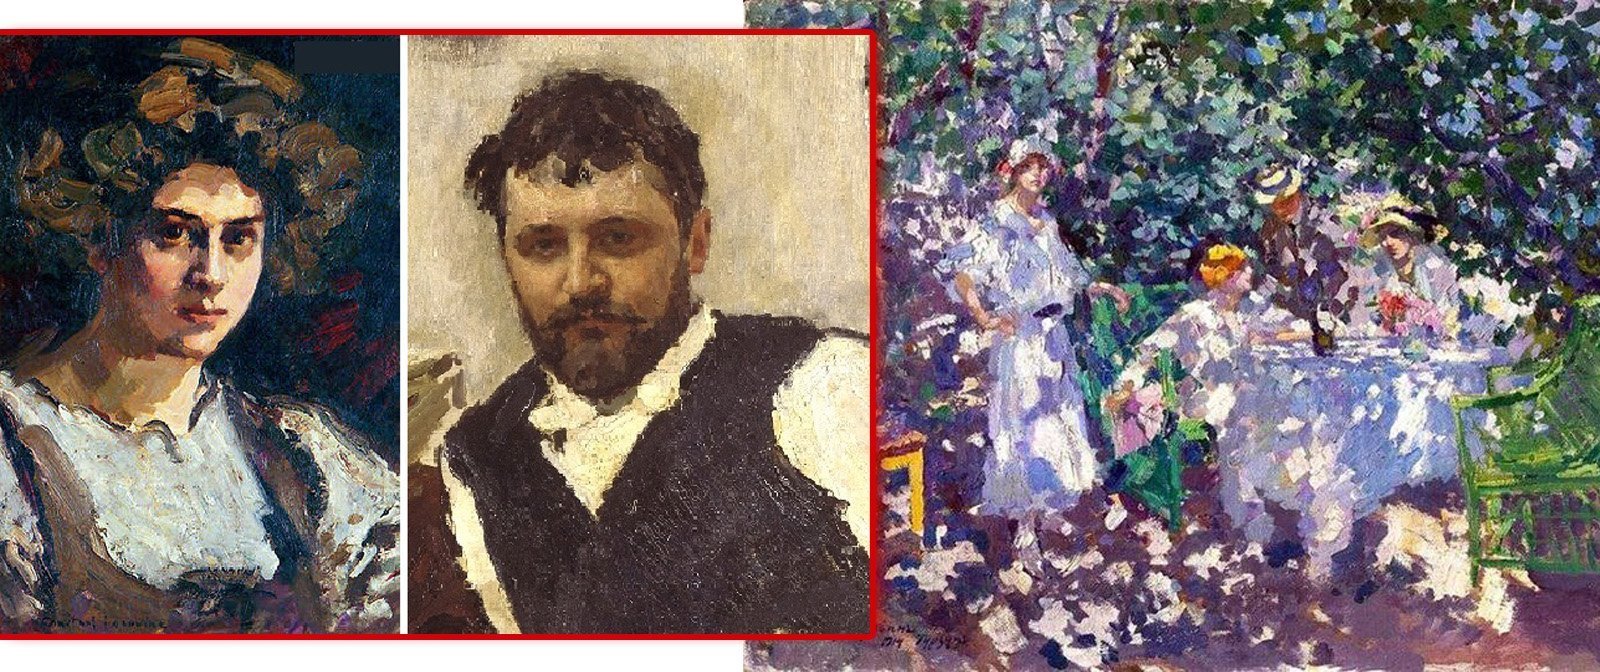 Балагур, весельчак, красавец, любимец женщин. Почему же личная жизнь знаменитого художника Коровина сложилась так несчастливо?